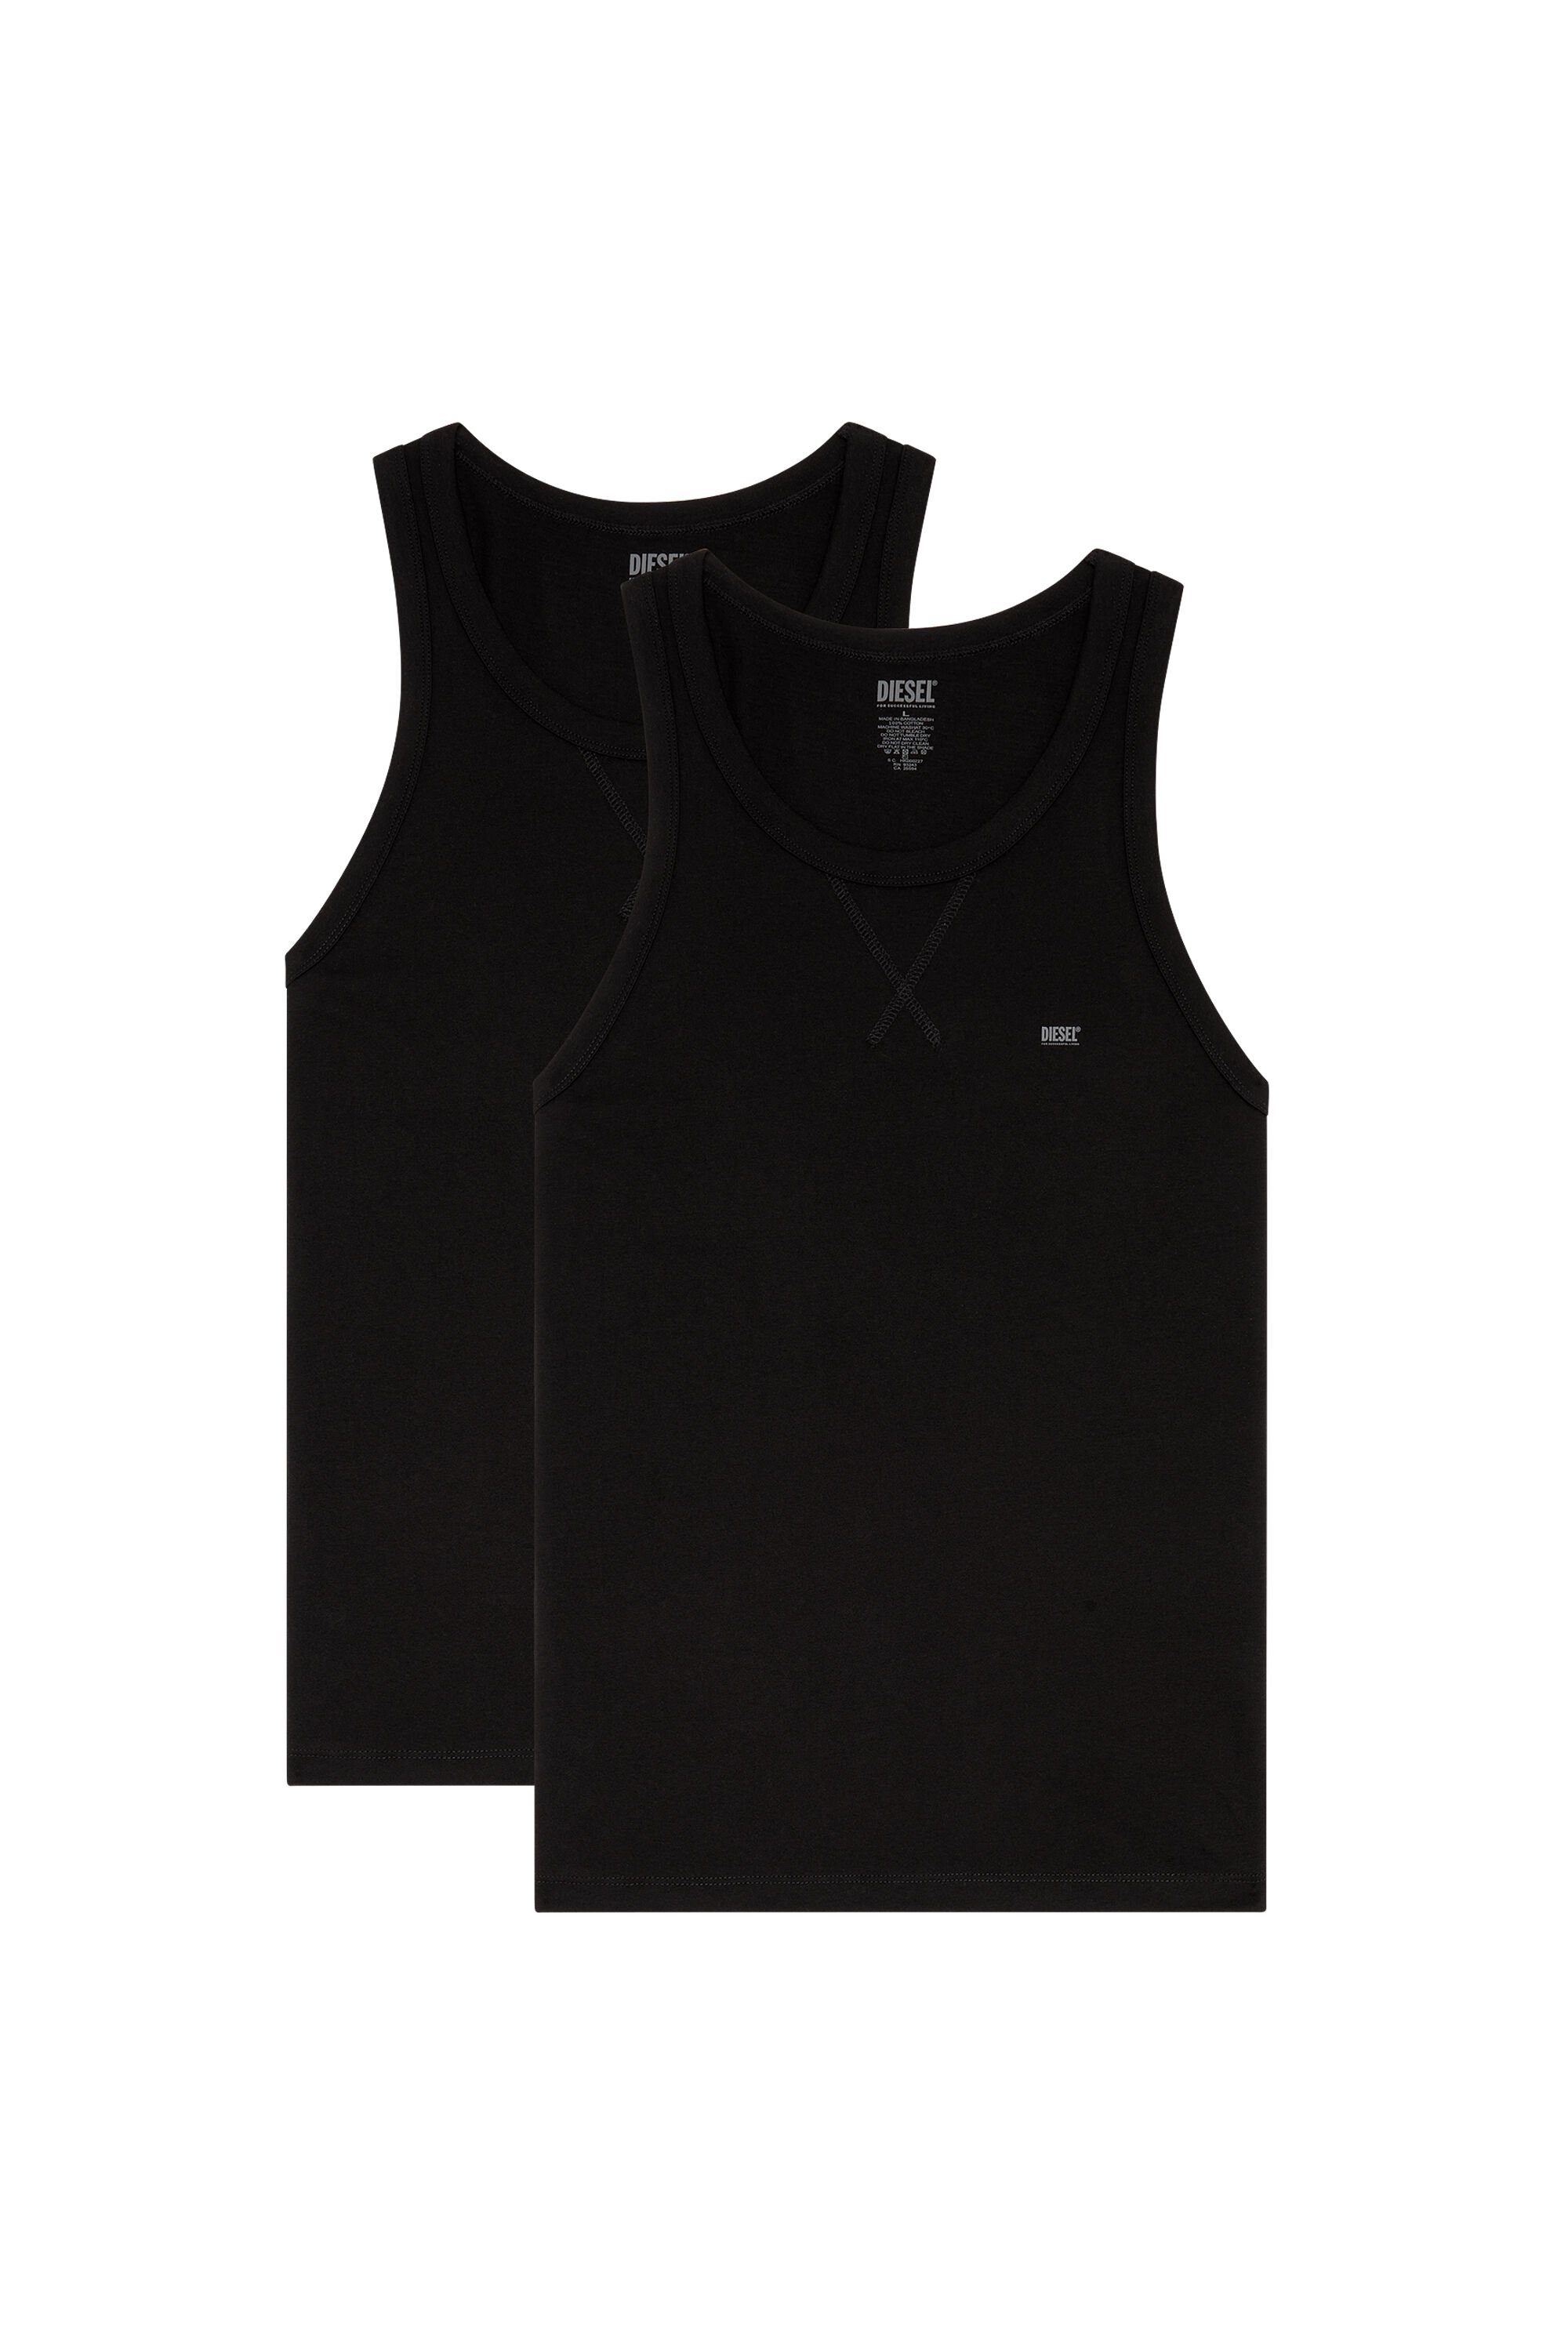 Diesel - UMTK-WALTYTWOPACK, Hombre Paquete de dos camisetas de tirantes de algodón in Negro - Image 2